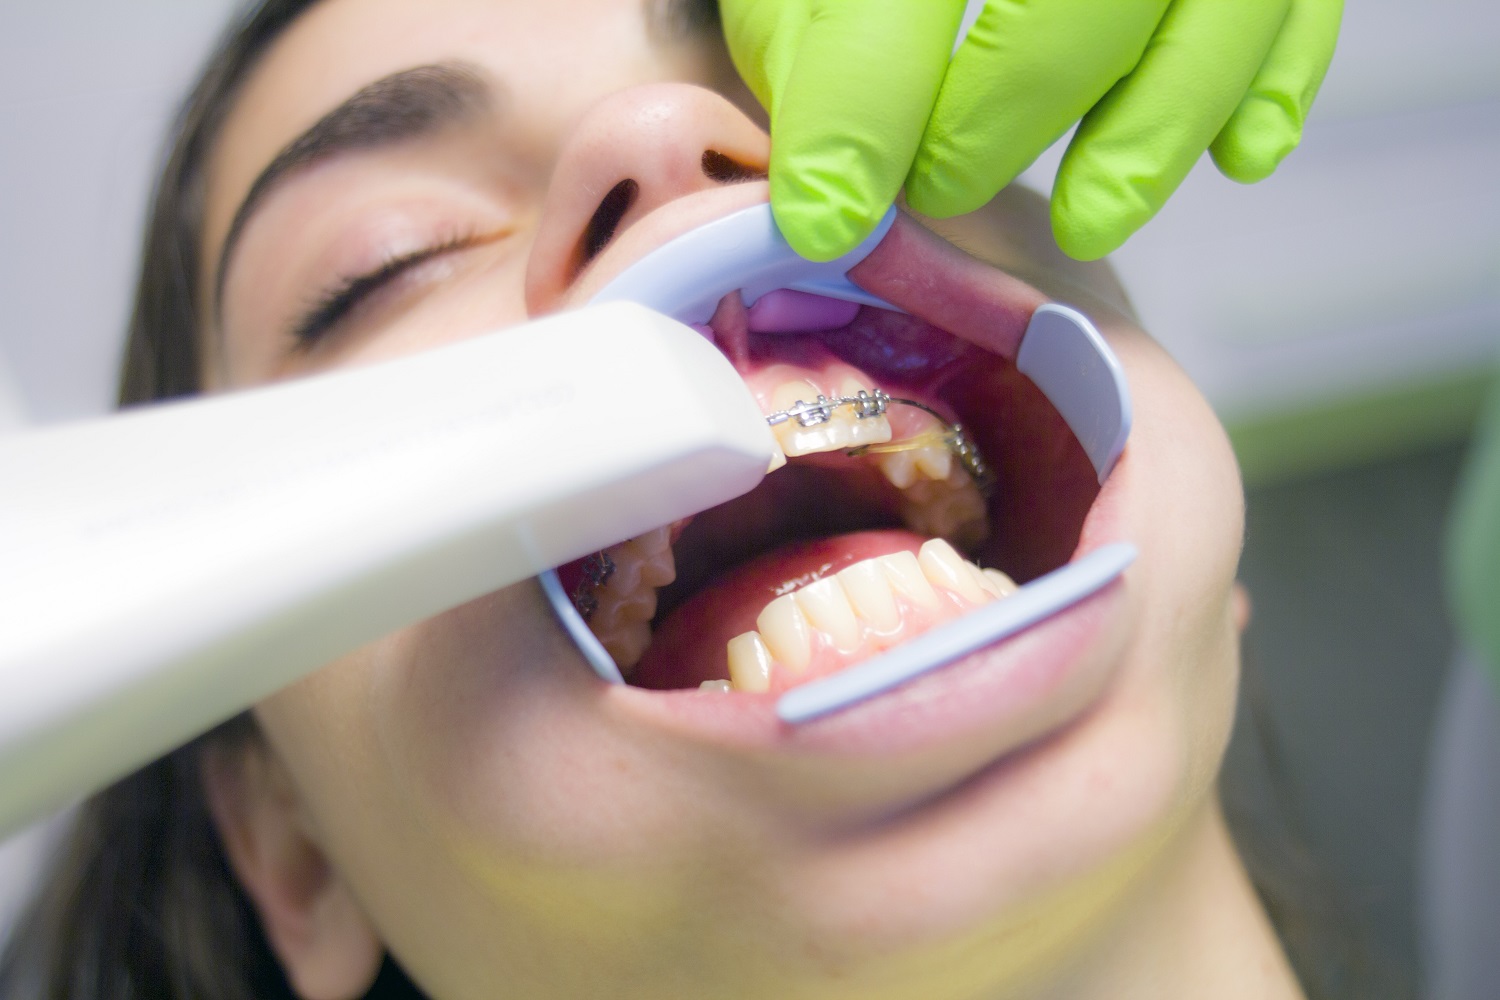 Gydytoja ortodontė: žmonės vengia breketų ir kapų dėl informacijos stygiaus